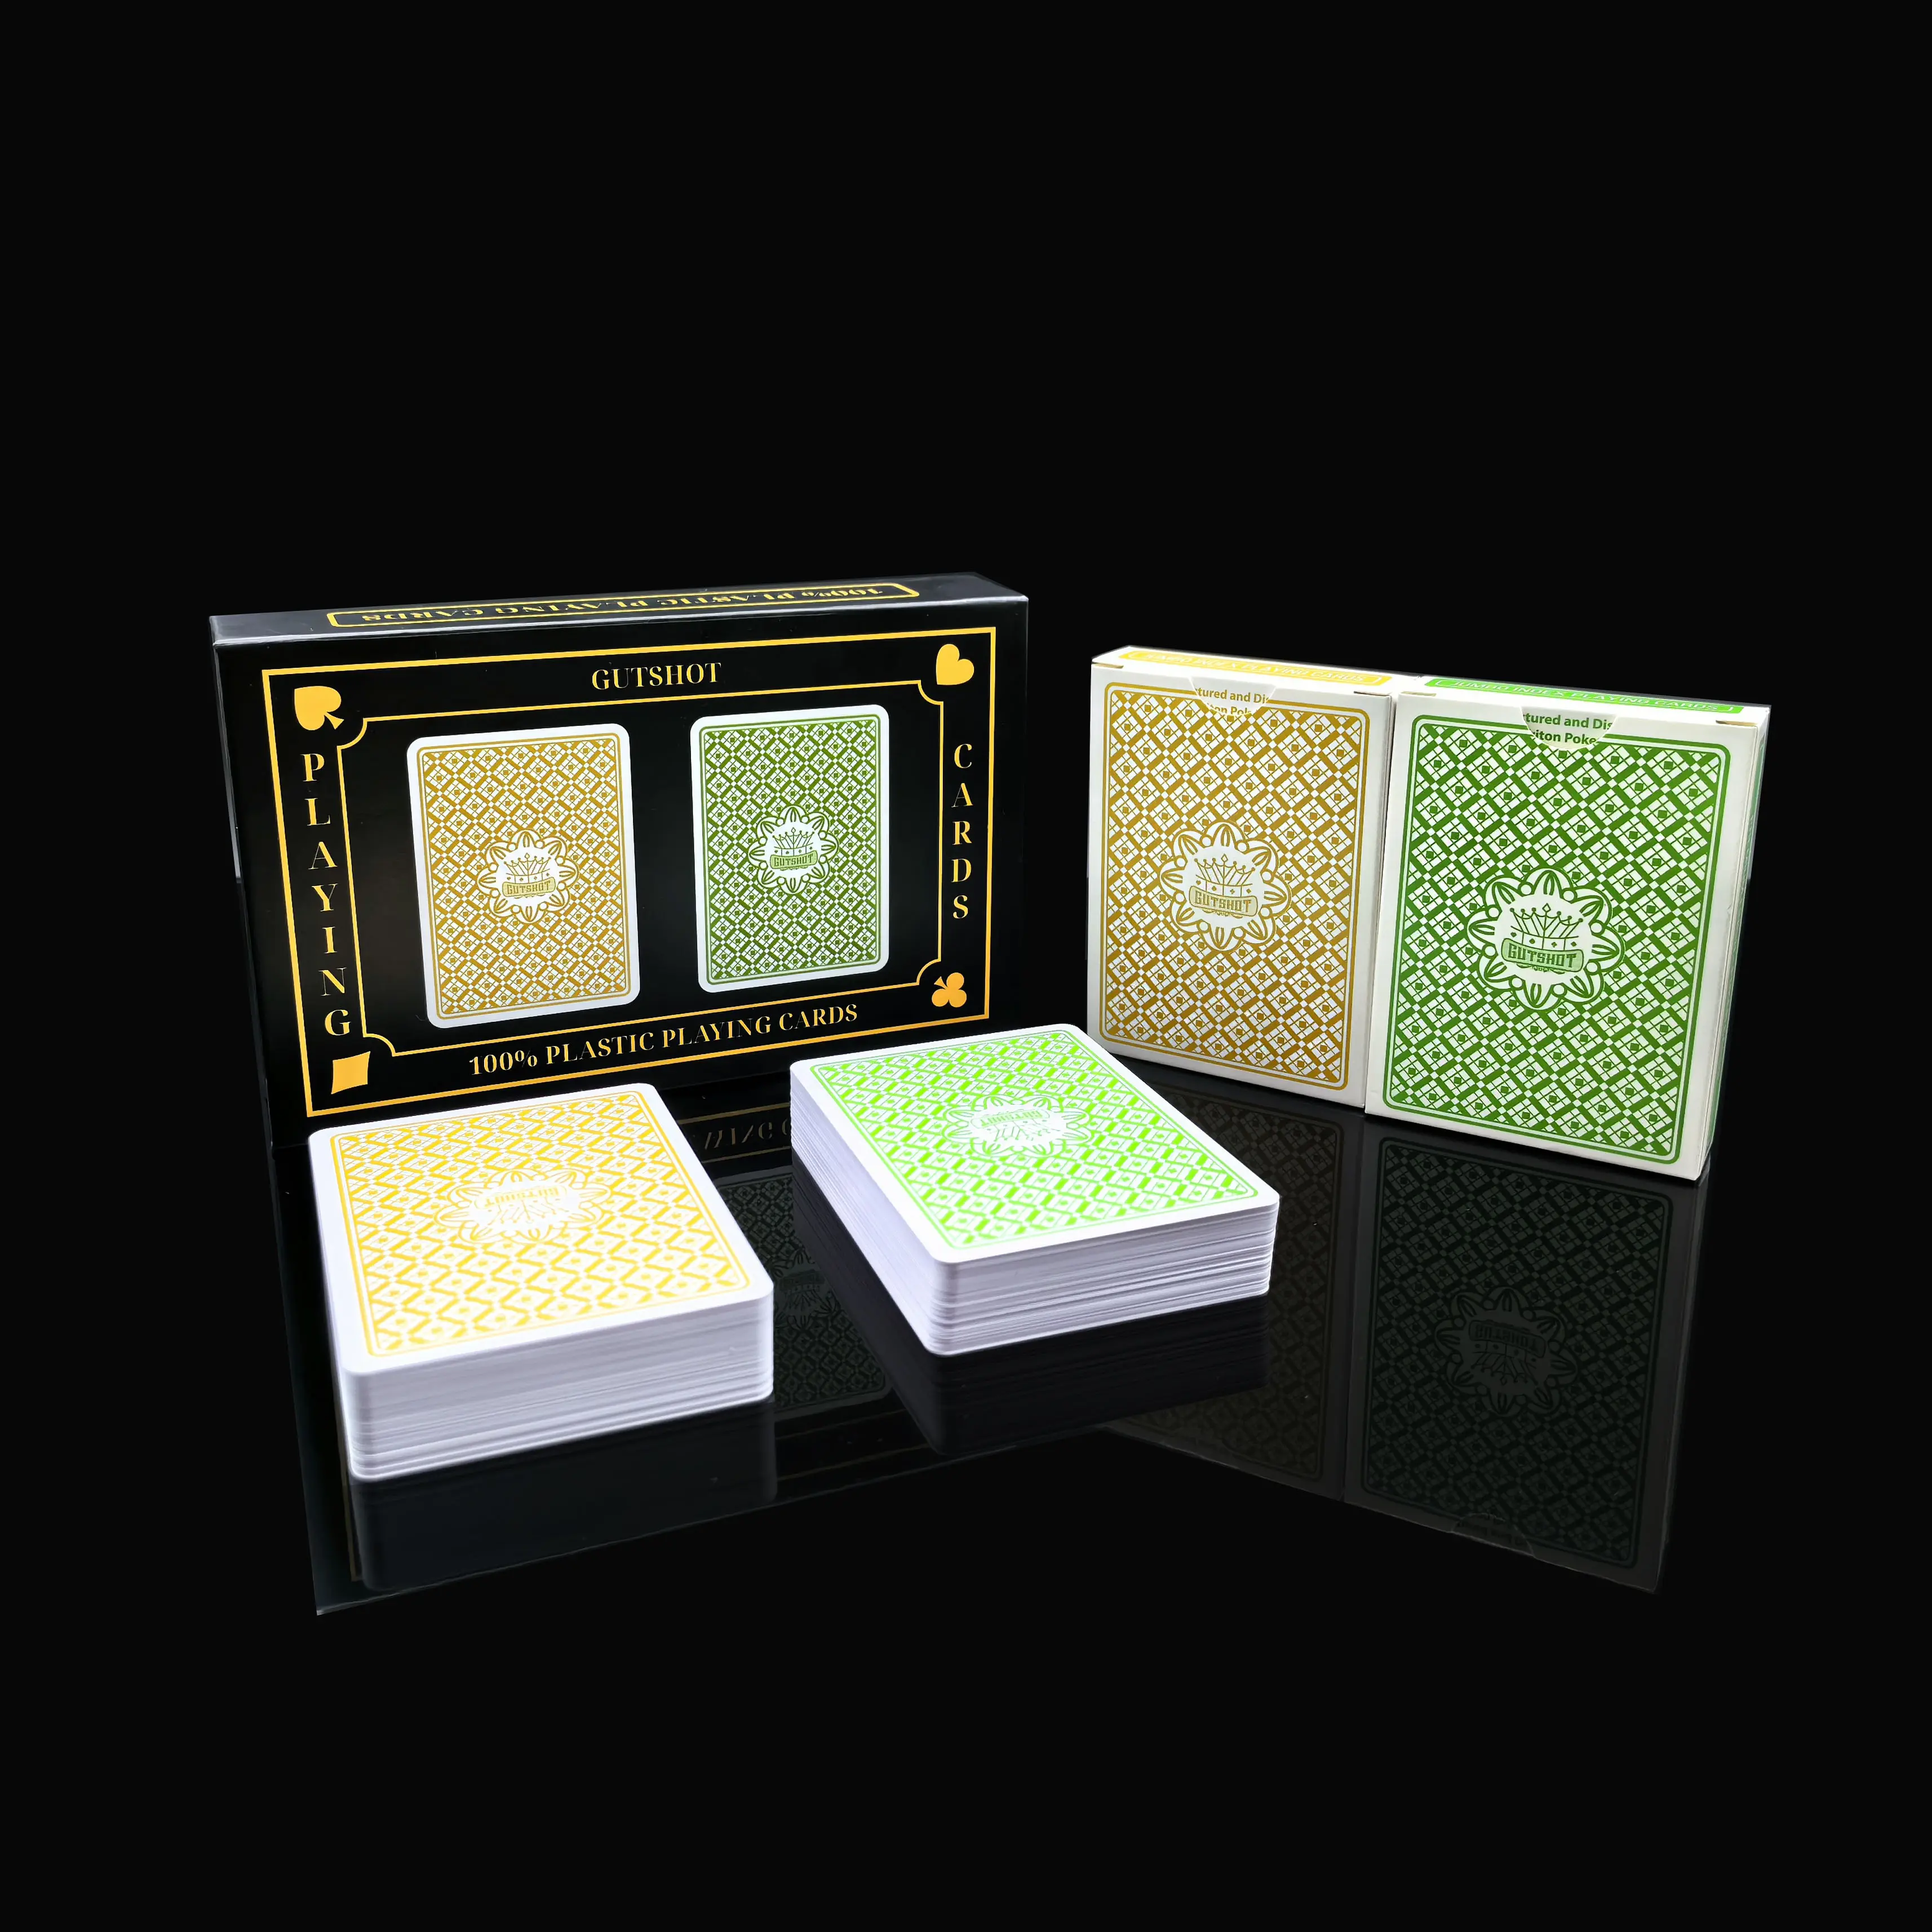 Plastik malzeme su geçirmez kutu ön ve arka baskı ile 100% PVC süblimasyon oyun kartı özel Poker oyun kartı